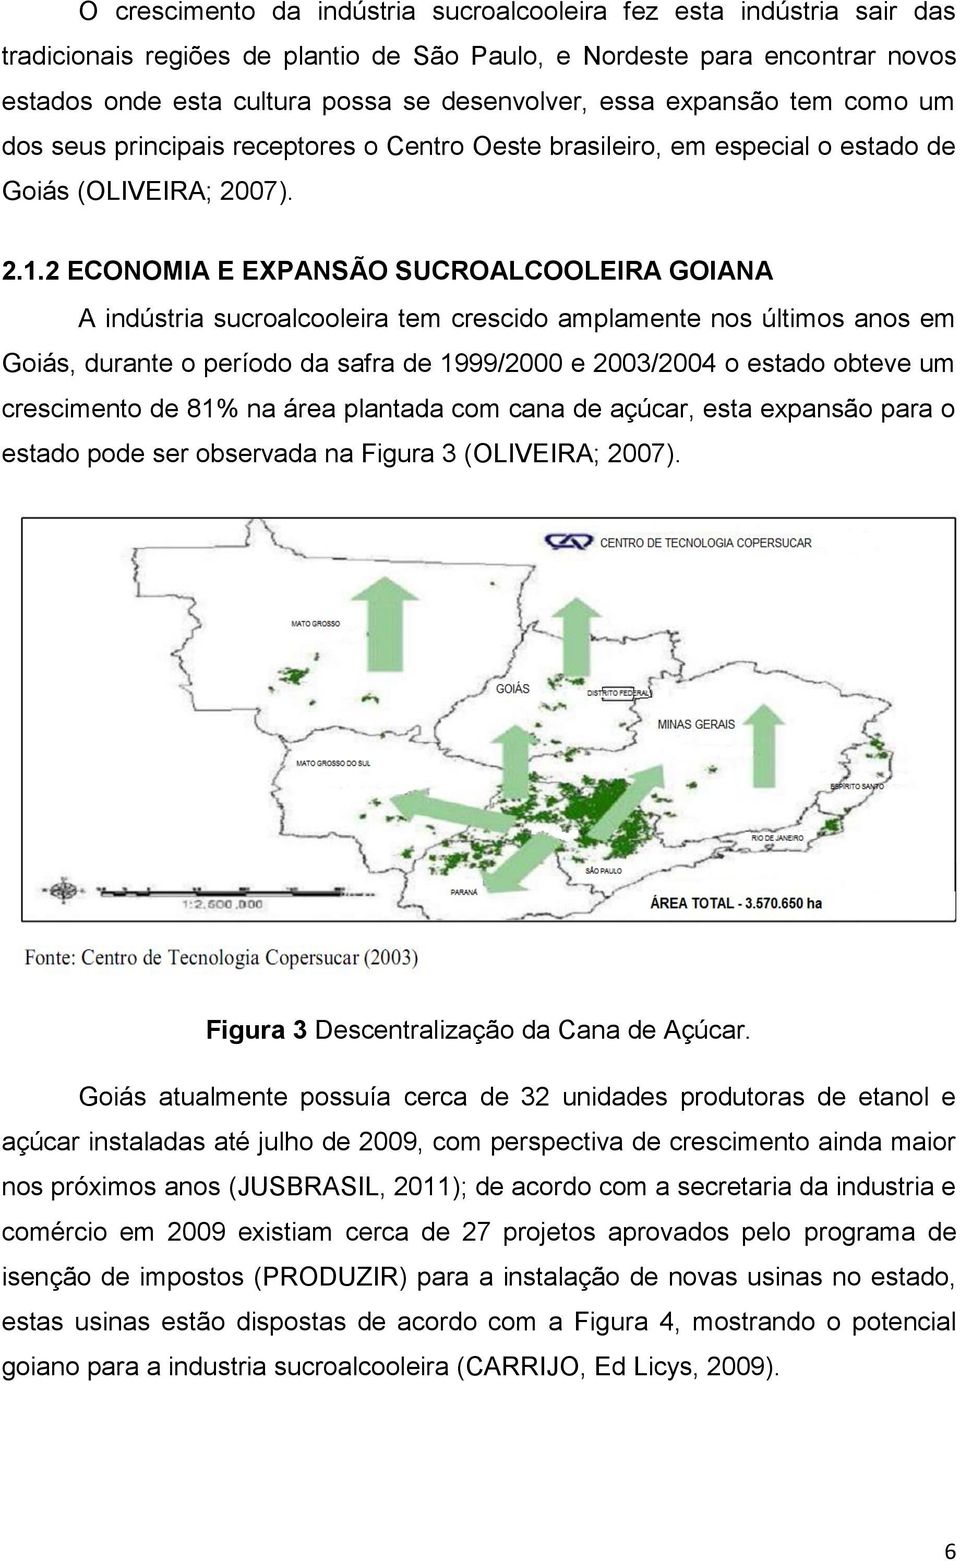 2 ECONOMIA E EXPANSÃO SUCROALCOOLEIRA GOIANA A indústria sucroalcooleira tem crescido amplamente nos últimos anos em Goiás, durante o período da safra de 1999/2000 e 2003/2004 o estado obteve um